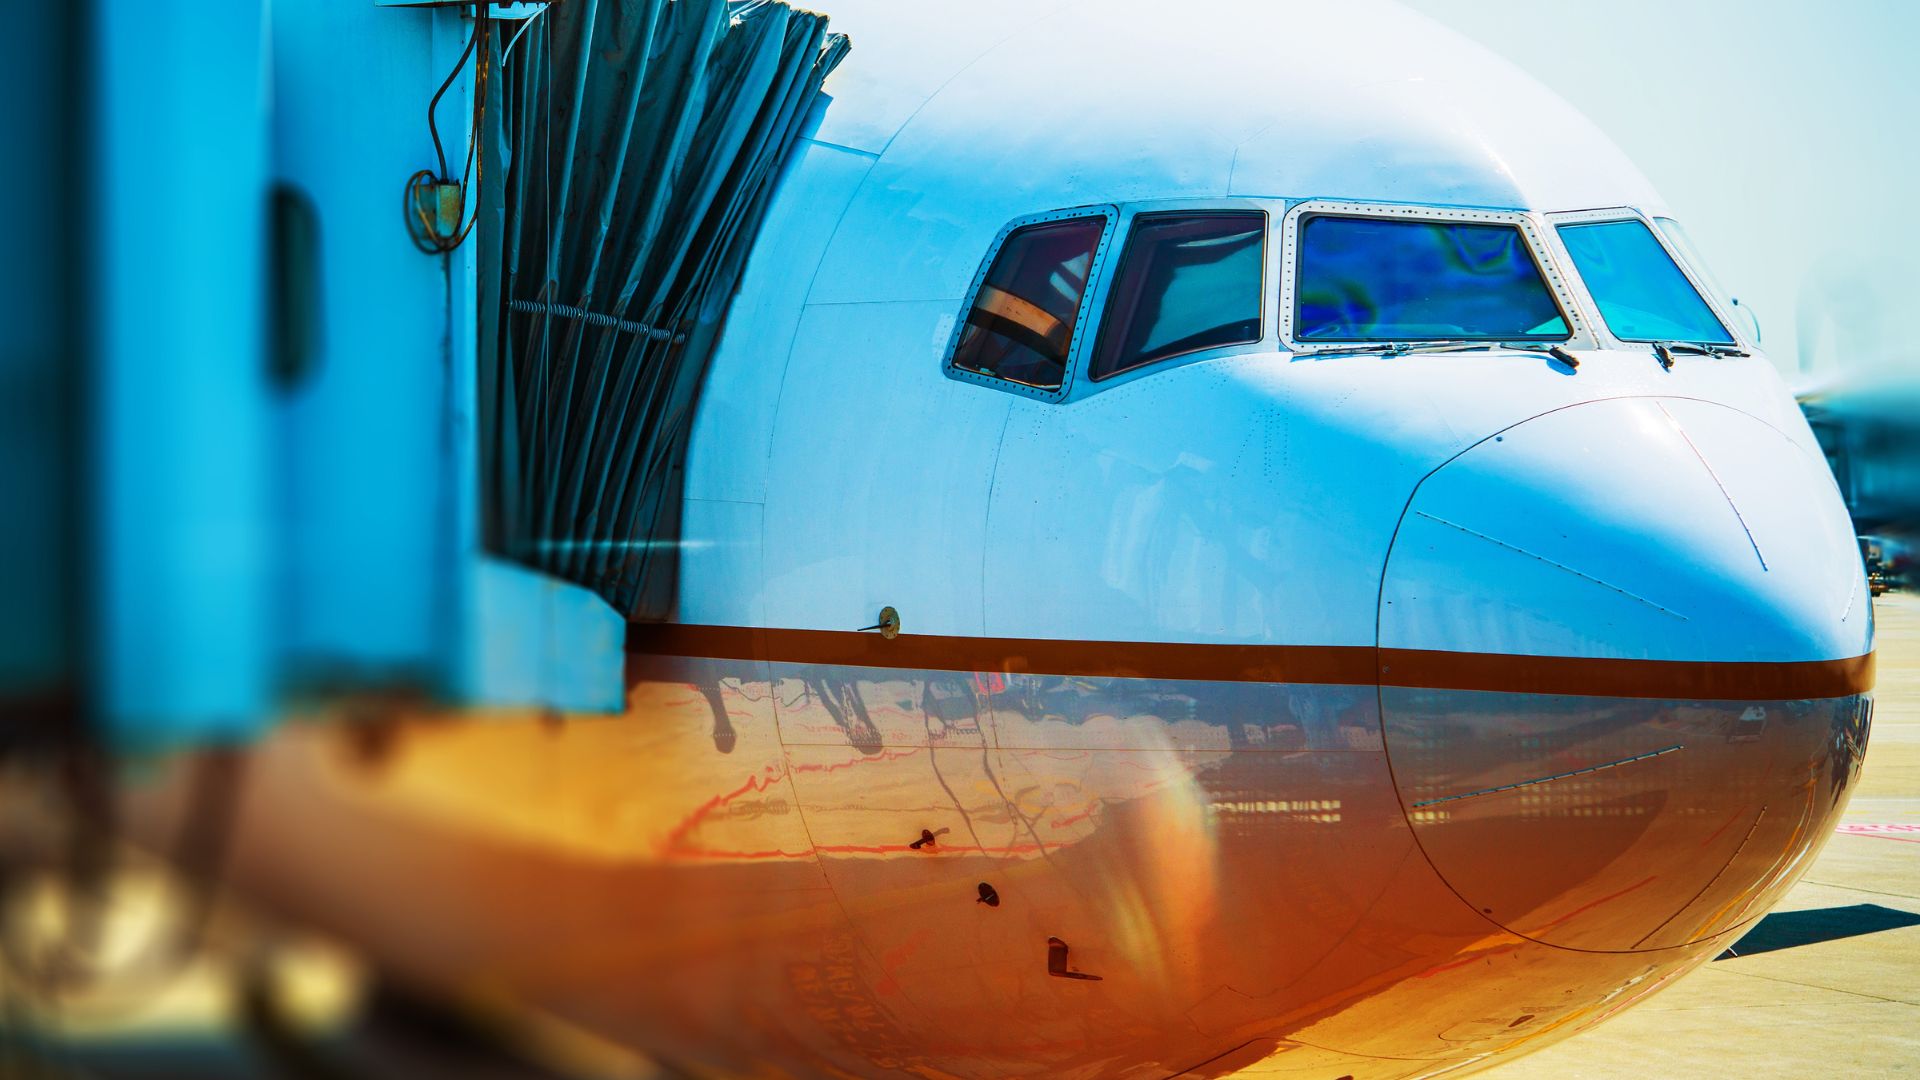 40 ประเทศเสนอ ICAO ลดนักบินเหลือ 1 คนเพื่อลดต้นทุน-แก้ปัญหาขาดแคลนแรงงาน 